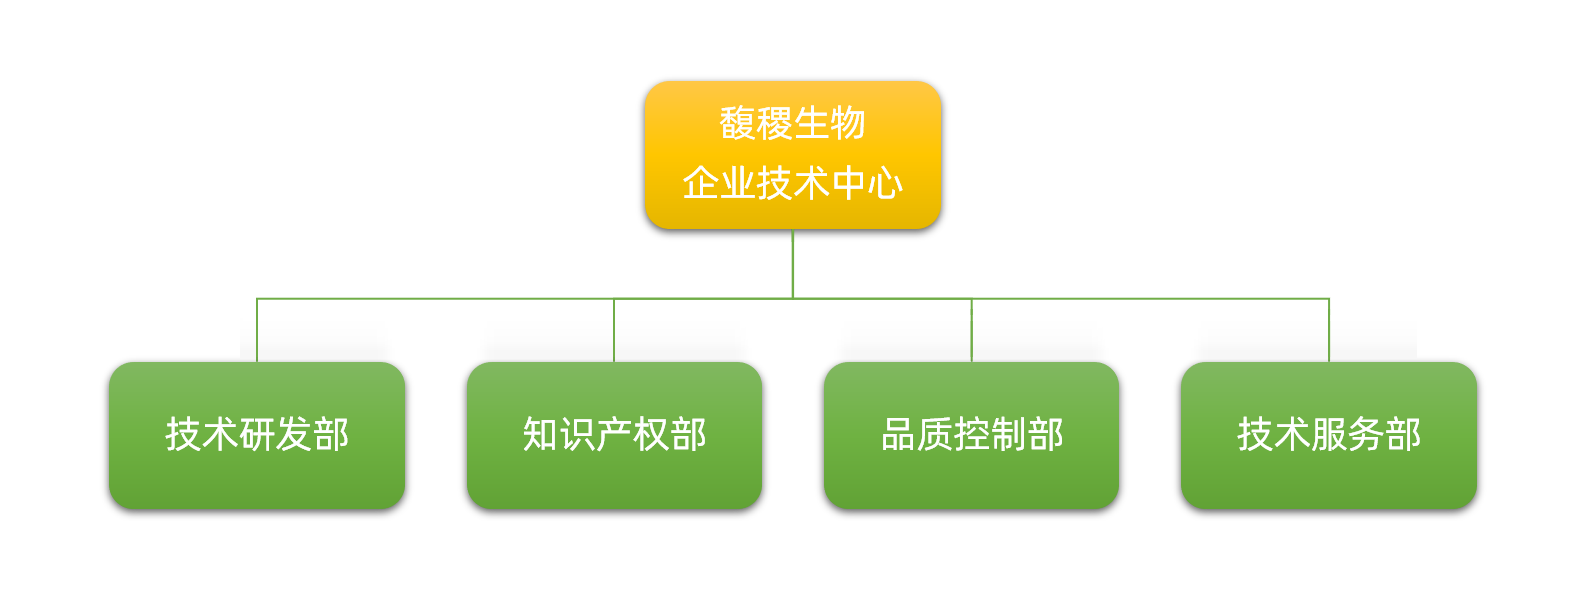 企业技术中心组织架构图